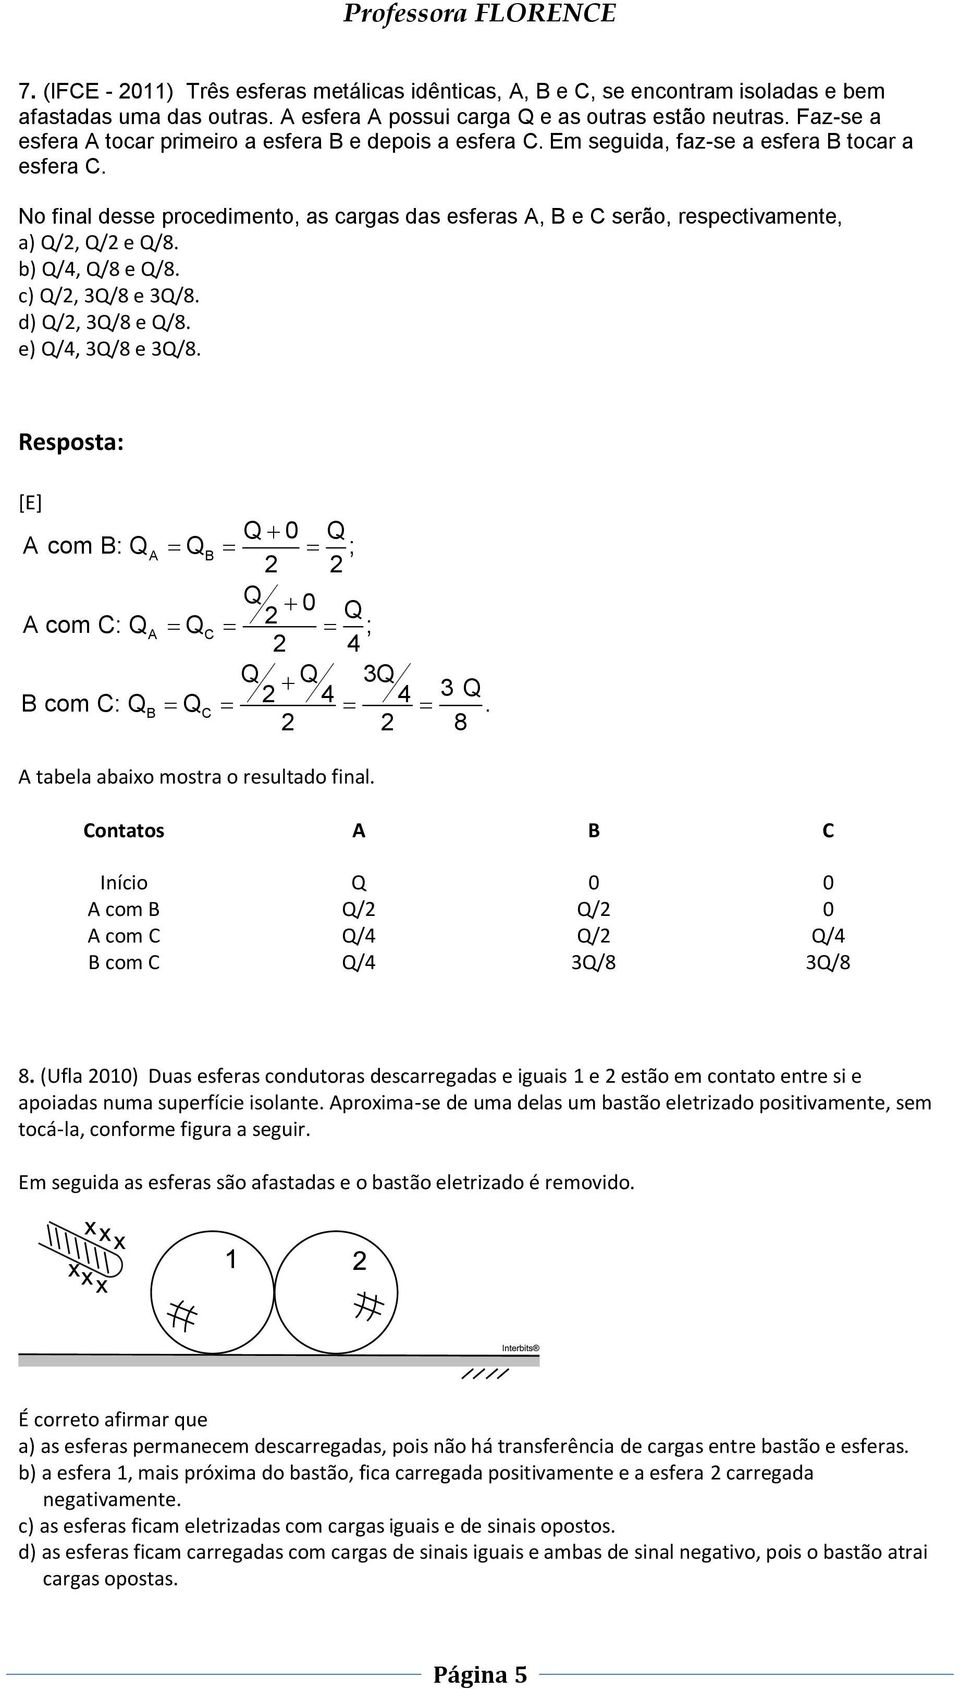 b) /4, /8 e /8. c) /2, 3/8 e 3/8. d) /2, 3/8 e /8. e) /4, 3/8 e 3/8. [E] 0 com : ; 2 2 0 2 com : ; 2 4 3 2 4 4 3 com :. 2 2 8 tabela abaixo mostra o resultado final.